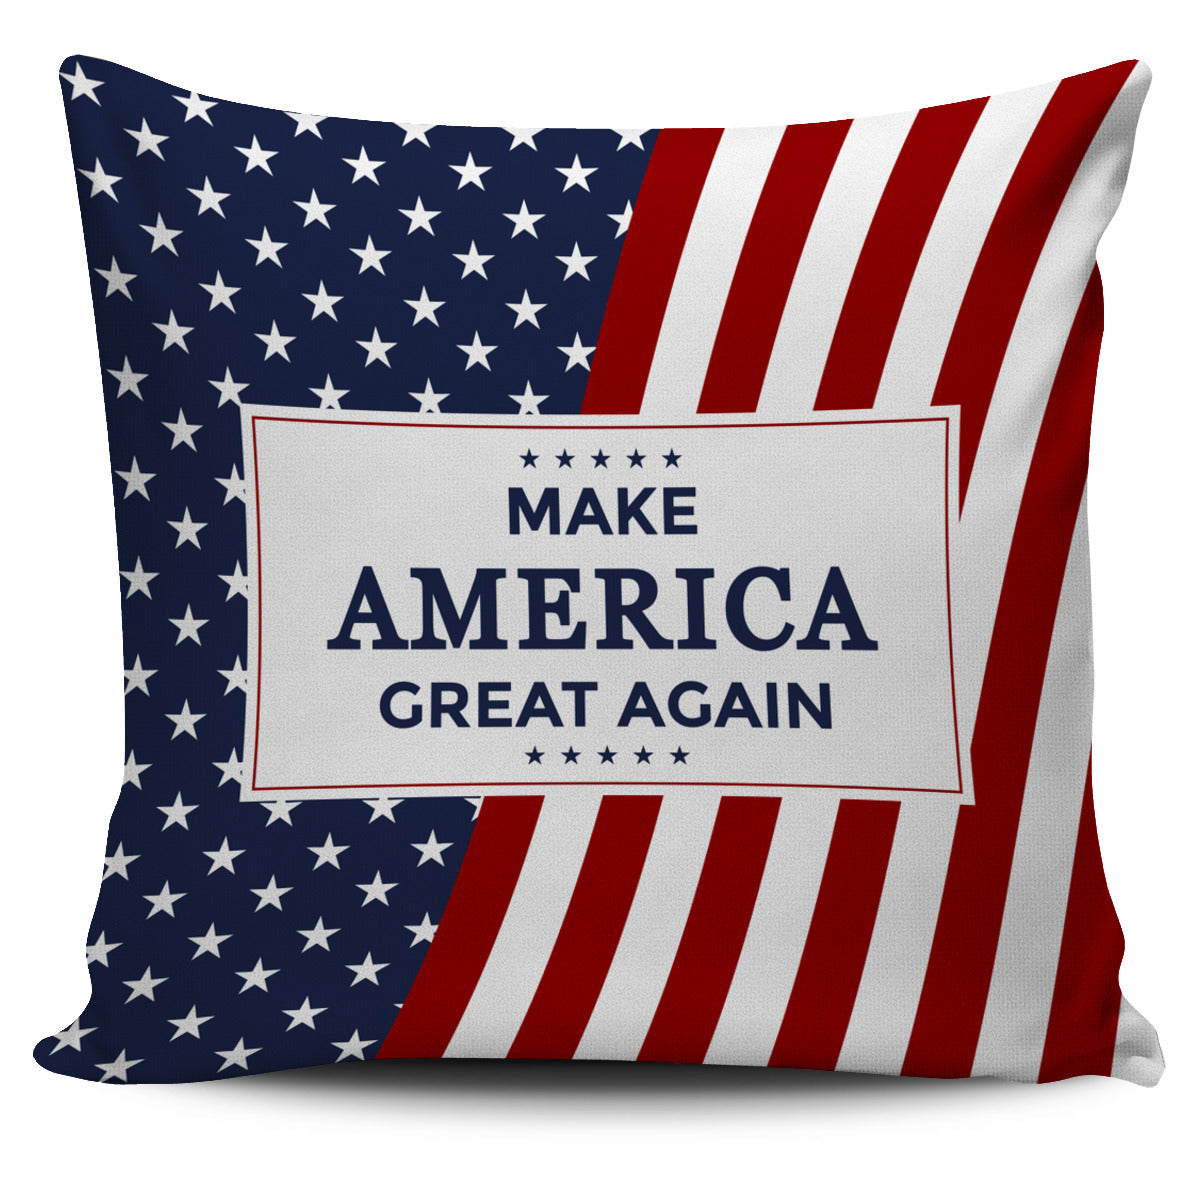 MAGA USA Pillow Cover